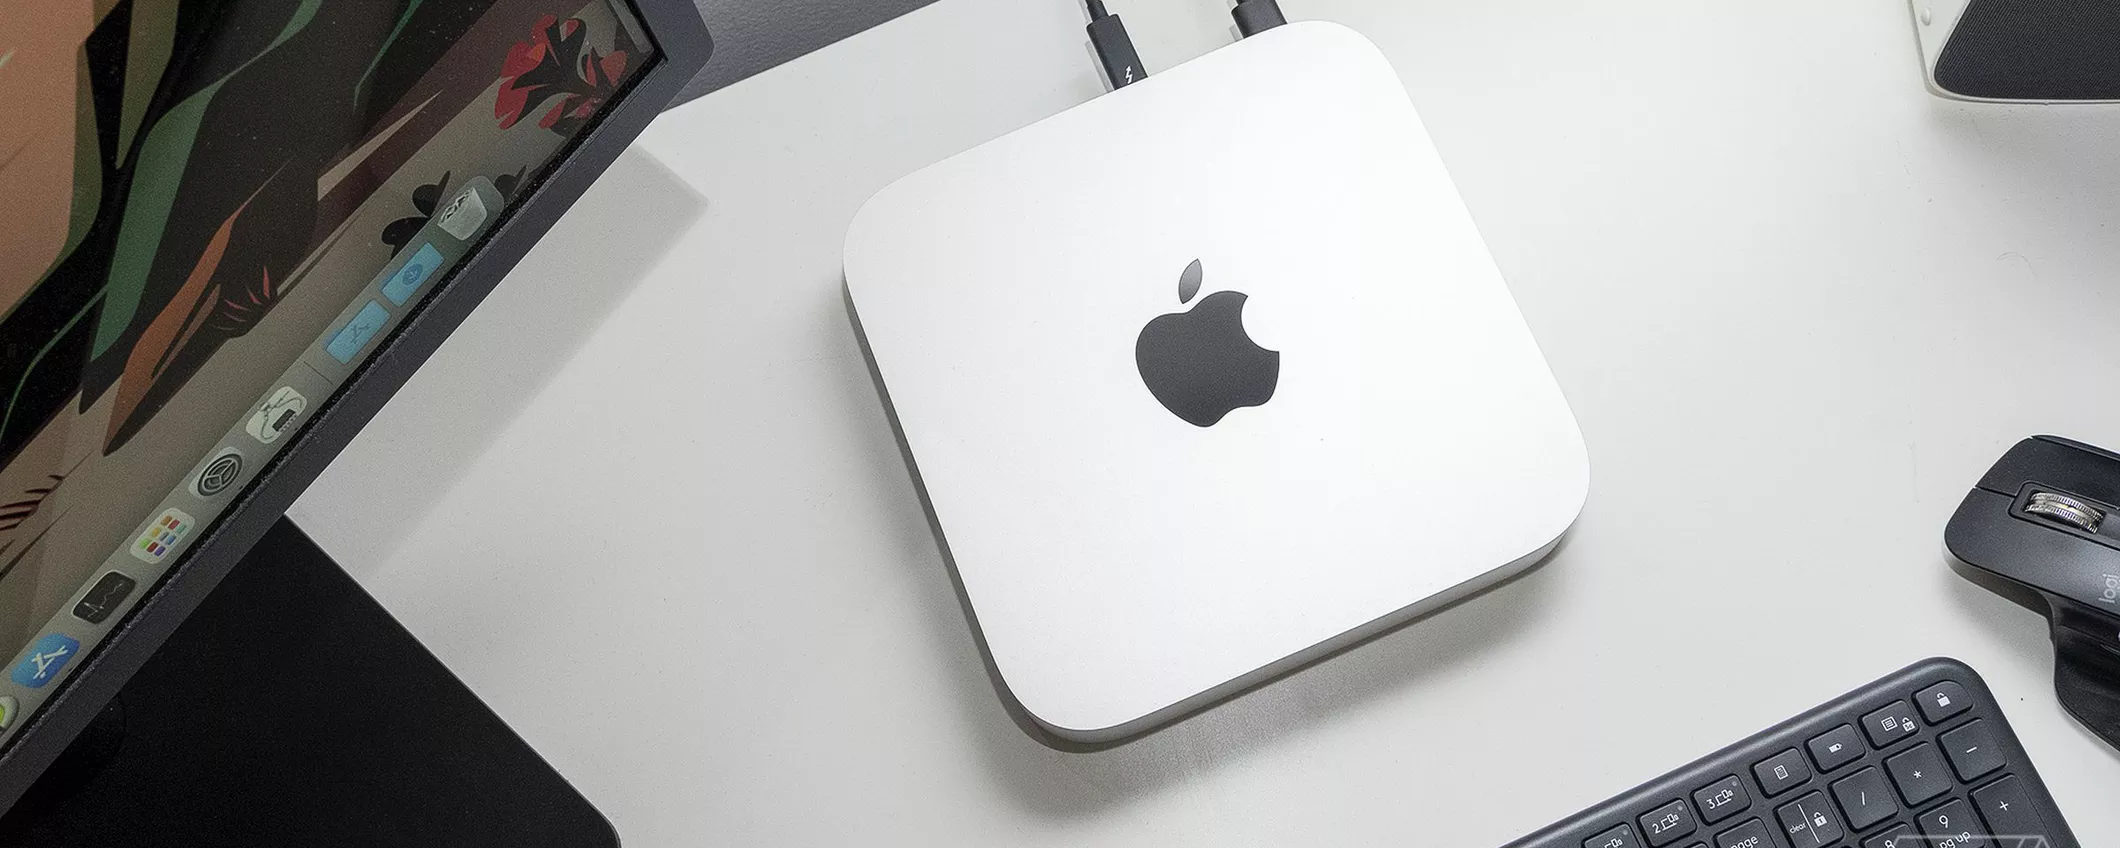 Mac mini M1, offerta da URLO su Amazon: ma vale ancora la pena comprarlo?